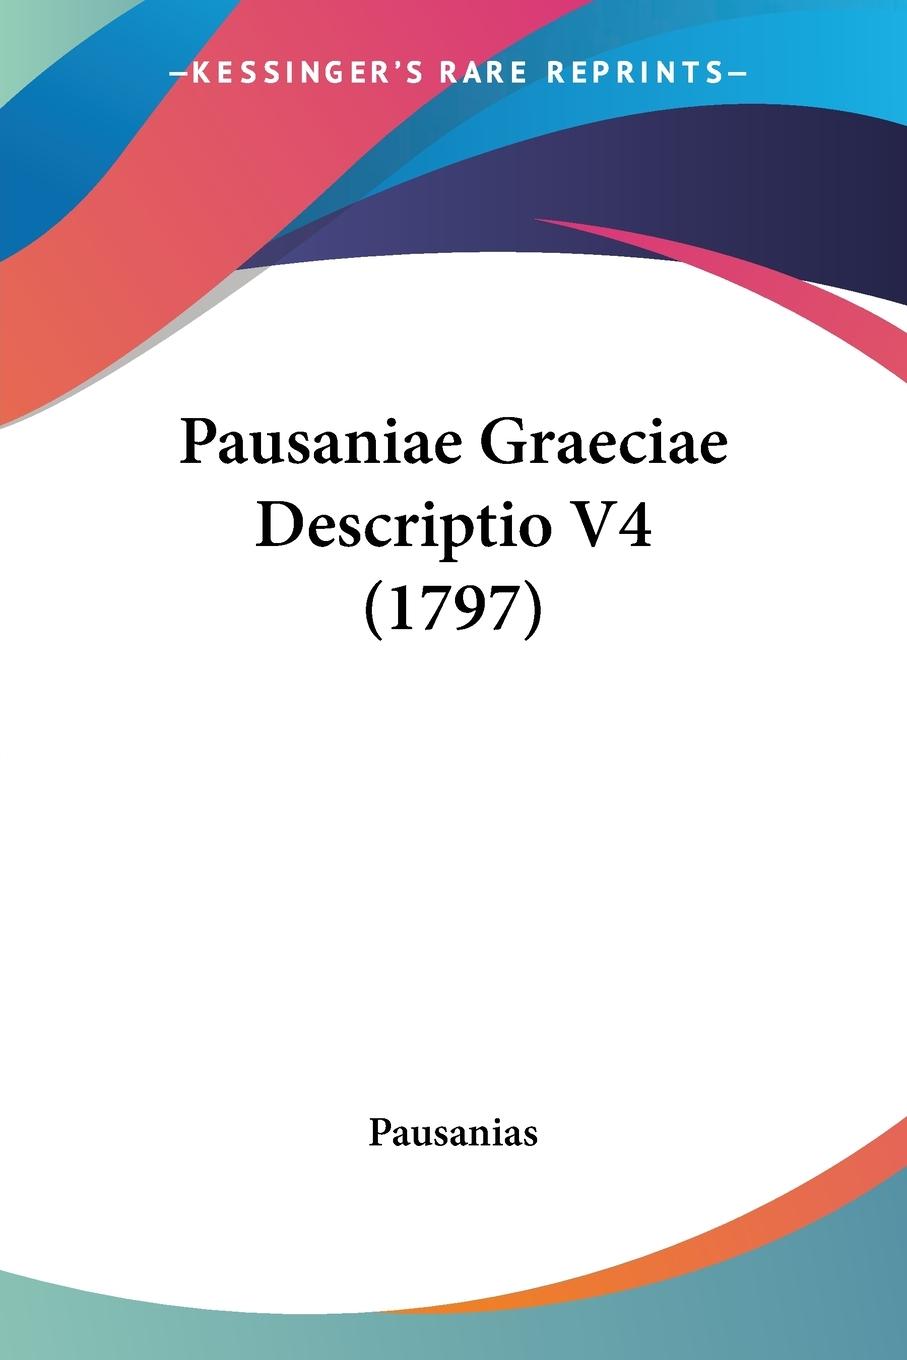 Pausaniae Graeciae Descriptio V4 (1797) - Pausanias